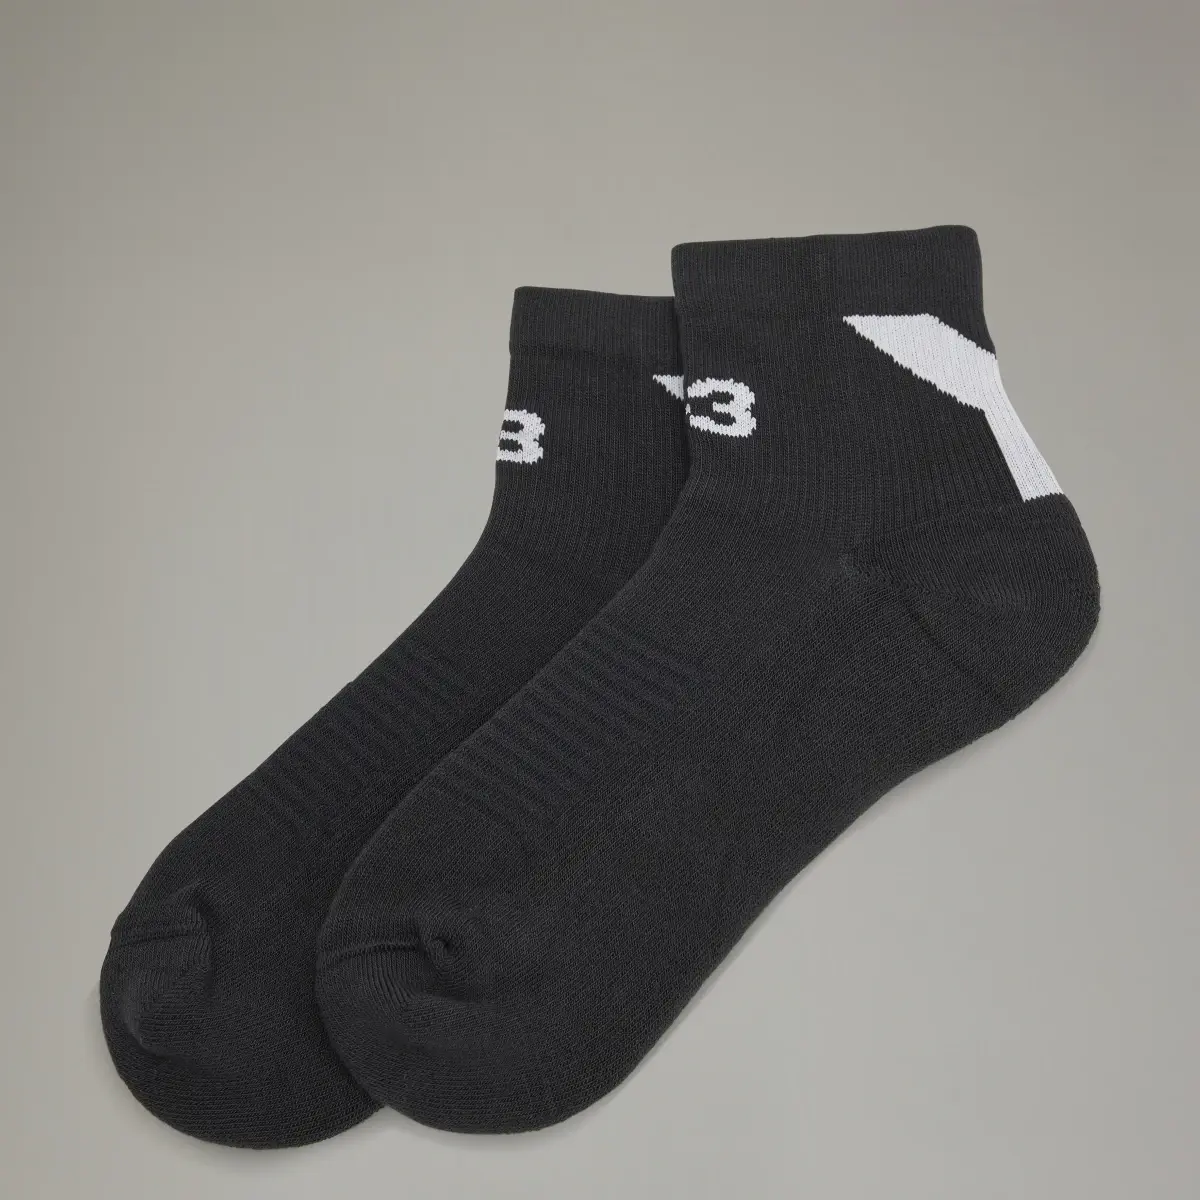 Adidas Y-3 Lo Socks. 1